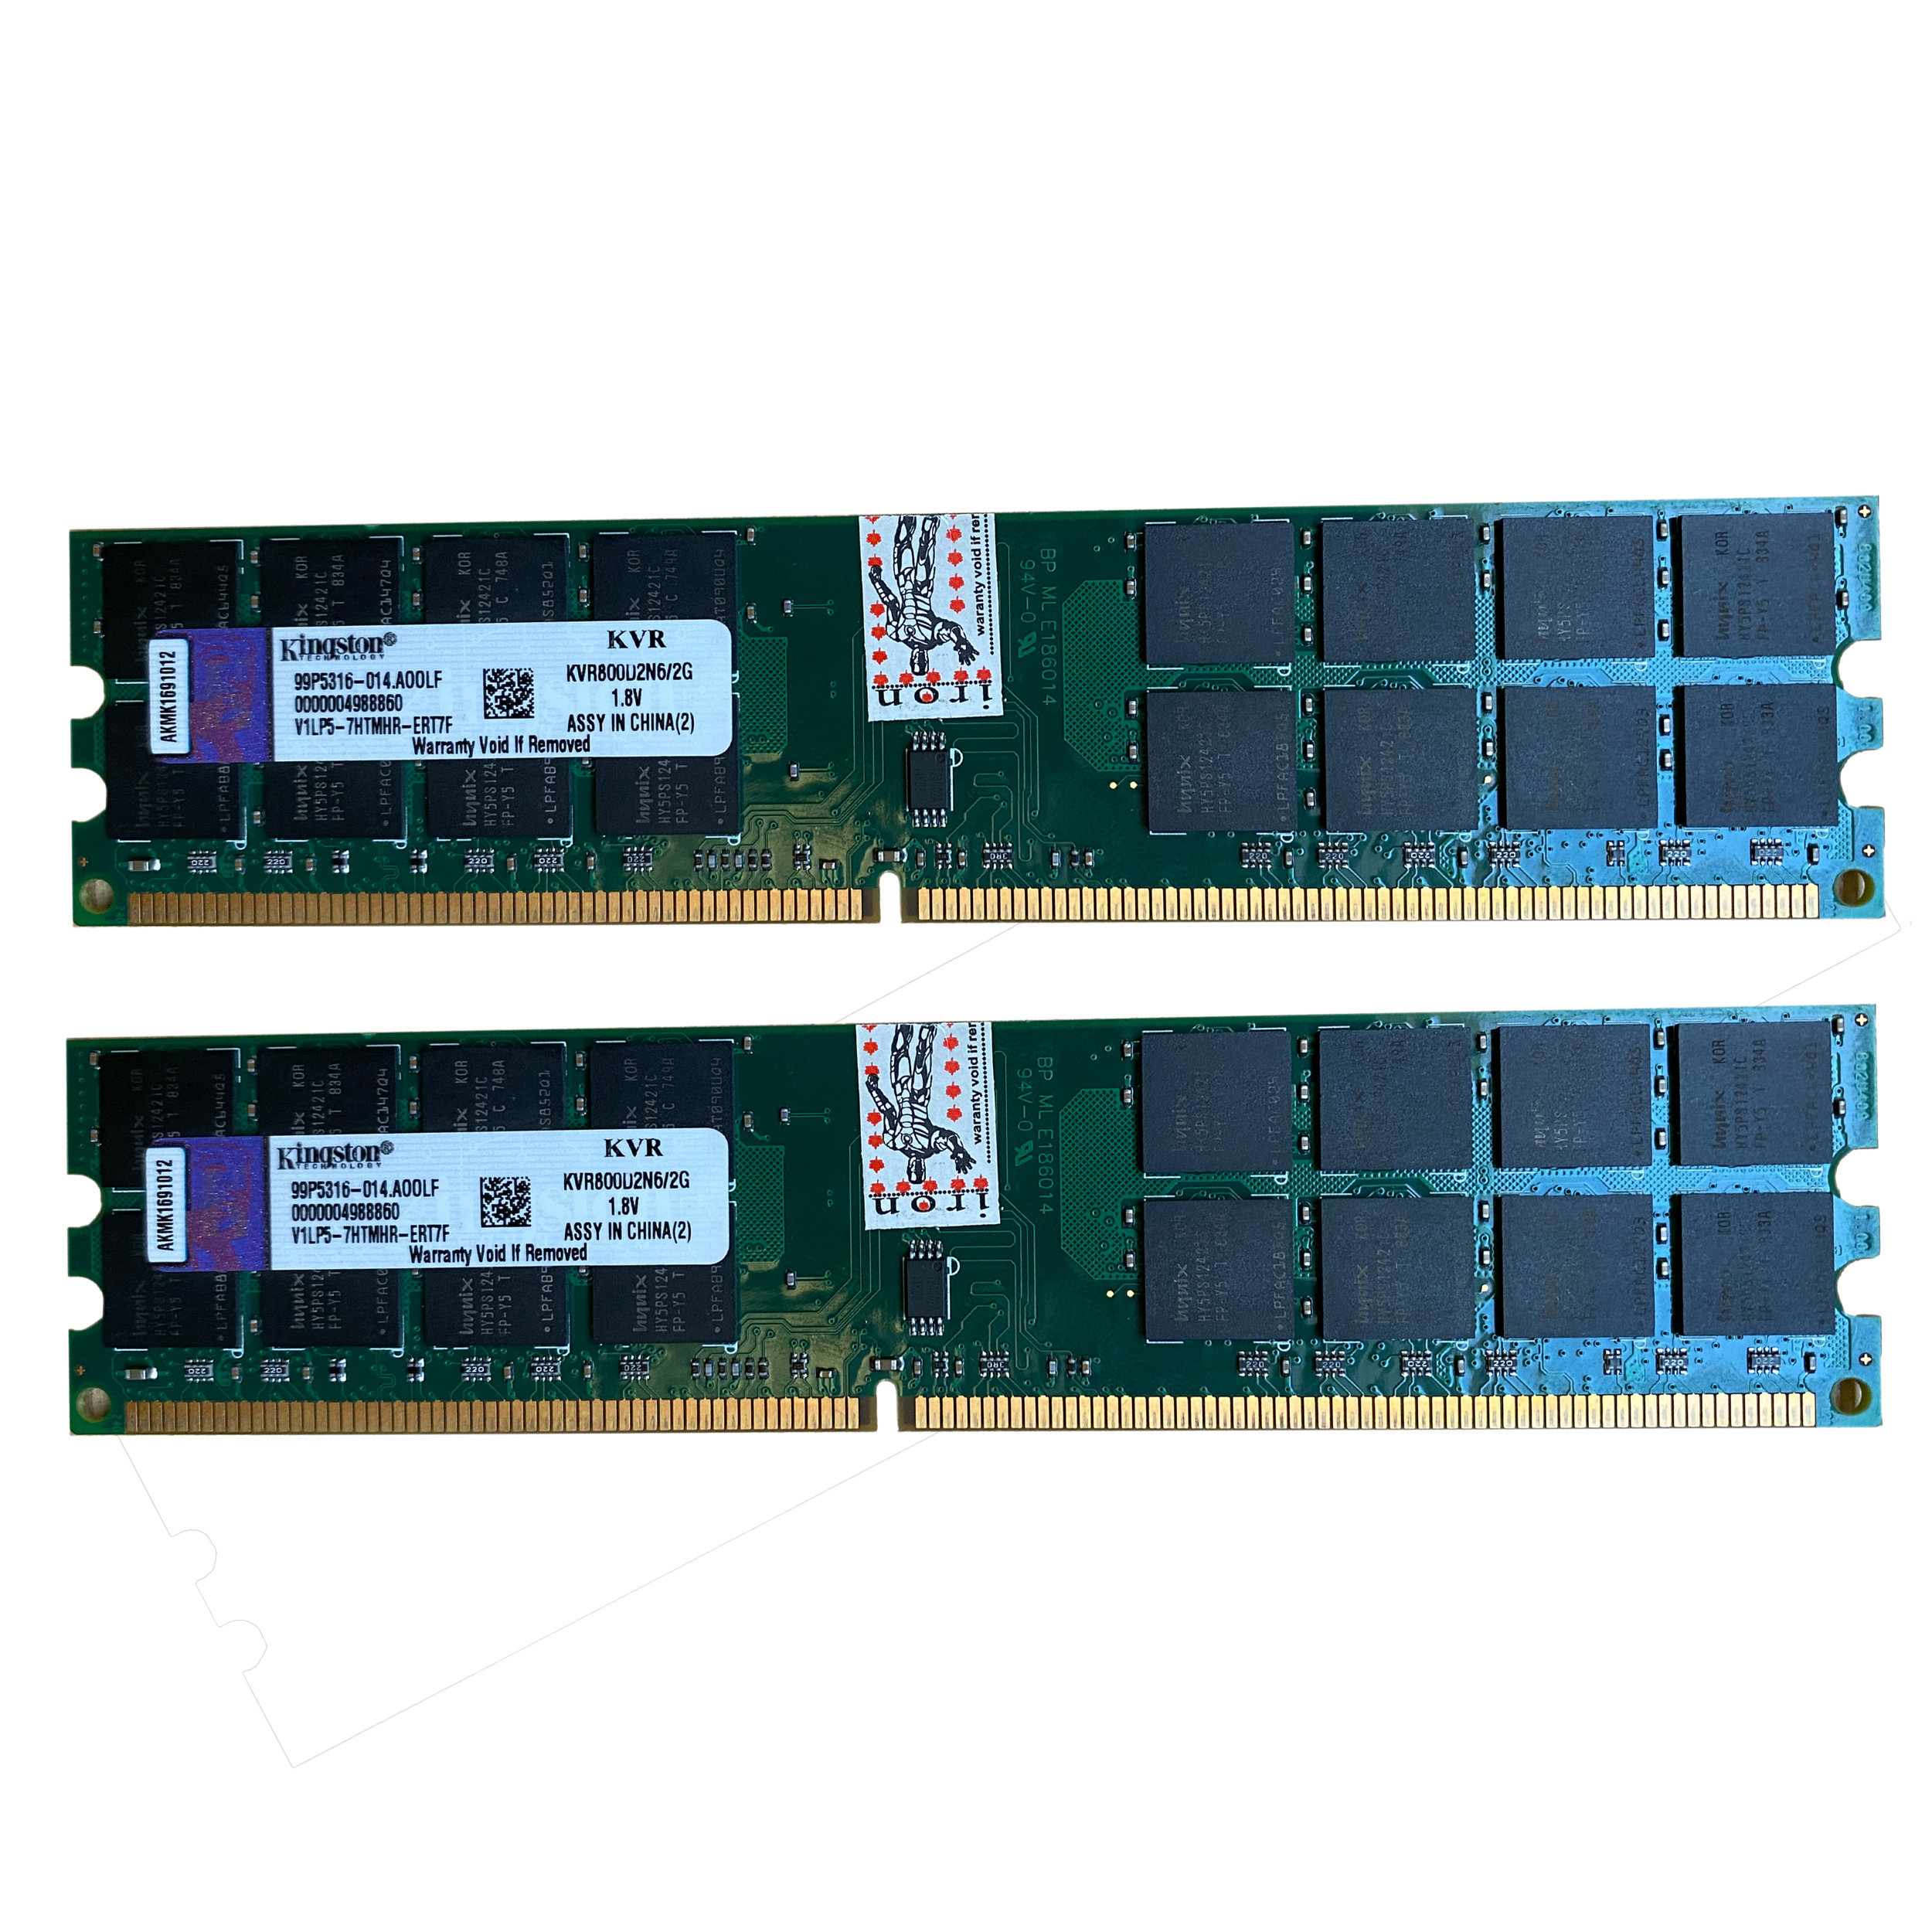 رم دسکتاپ DDR2 دو کاناله 800 مگاهرتز CL6 کینگستون مدل KVR800D2N6/2G ظرفیت 4 گیگابایت